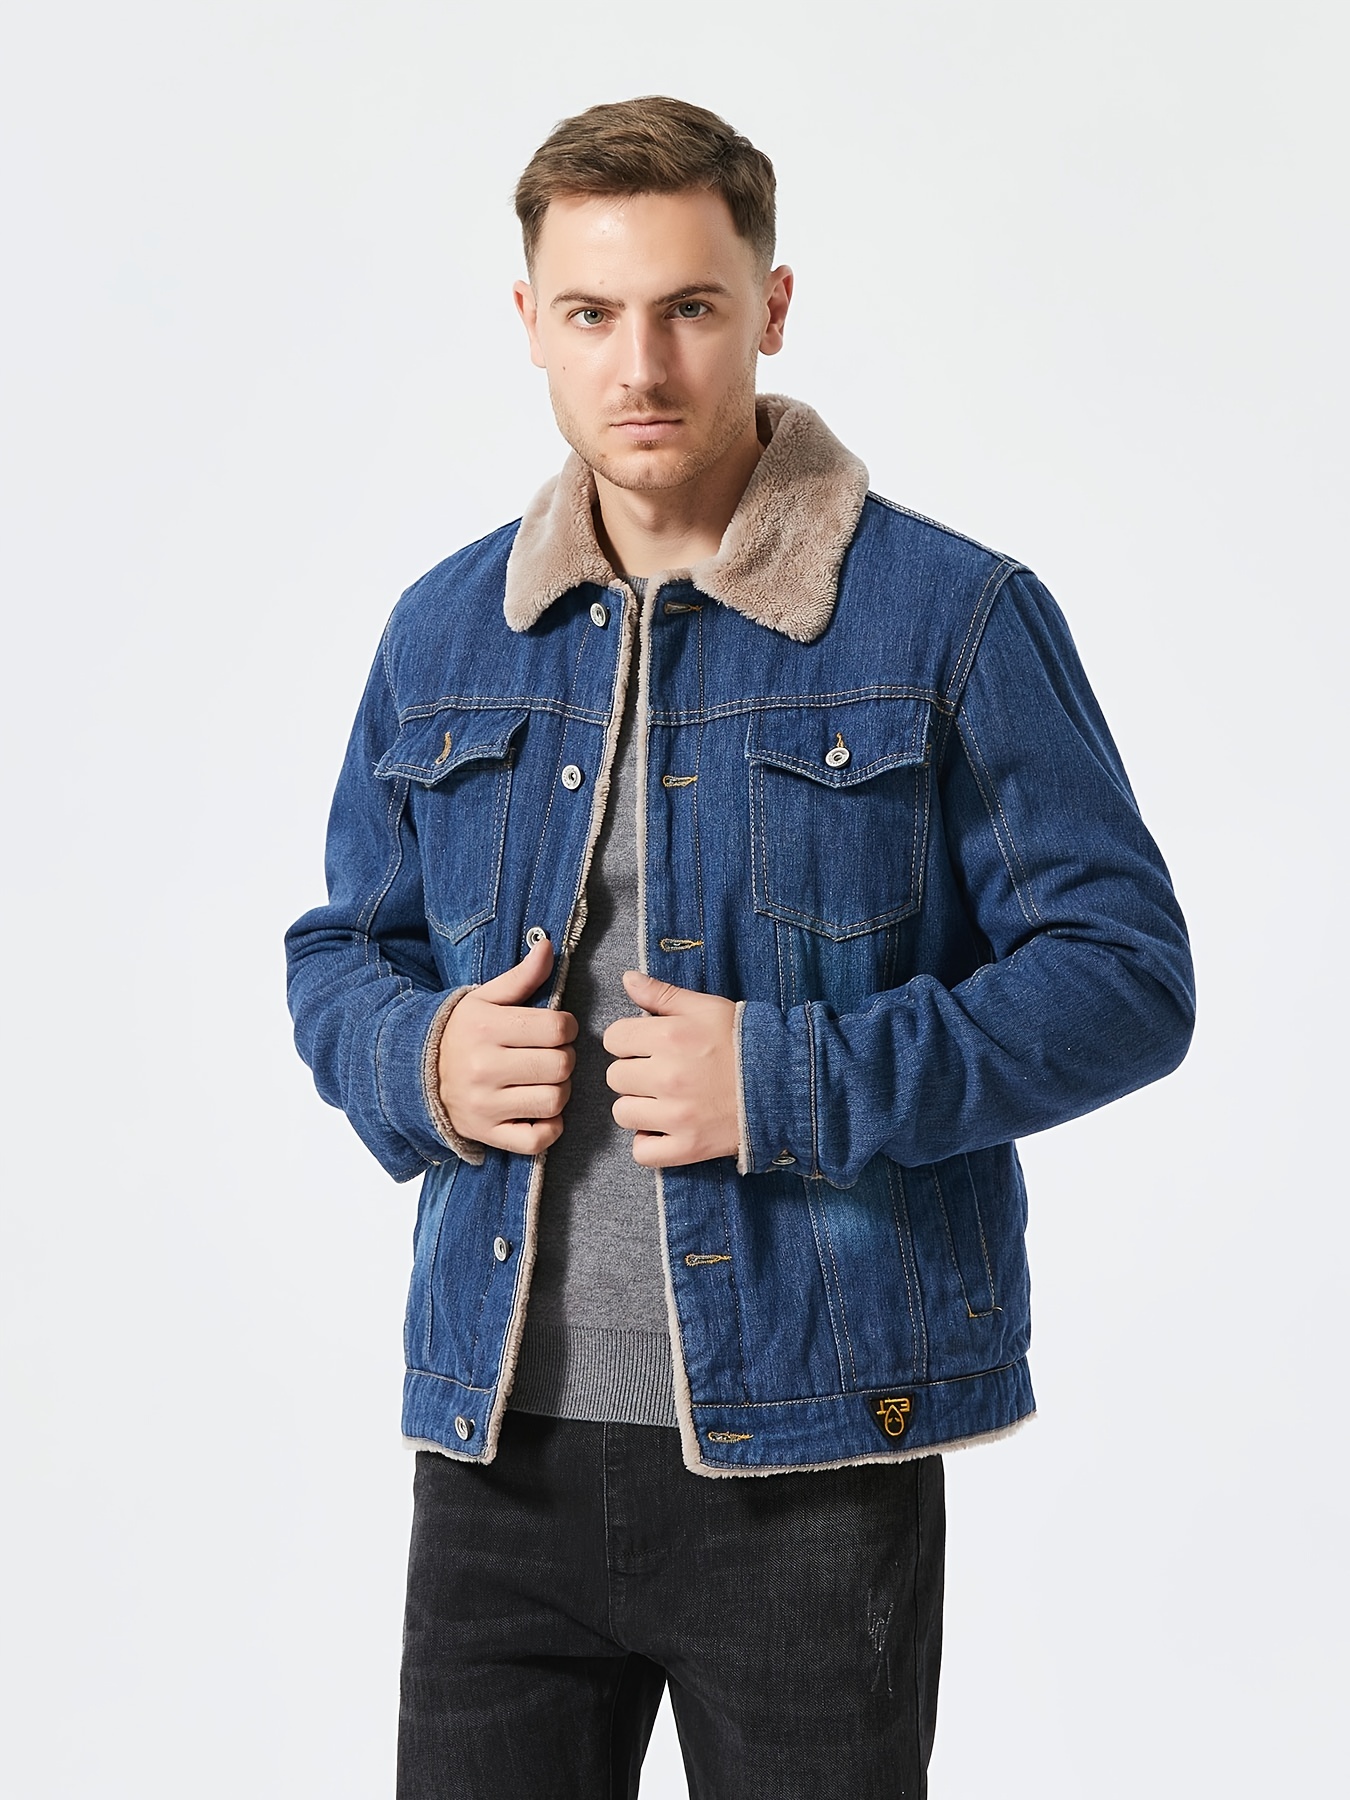 Men's Winter Jacket Casual Coat Lapel Jacket Denim Warm Fur Collar Fleece  Lined